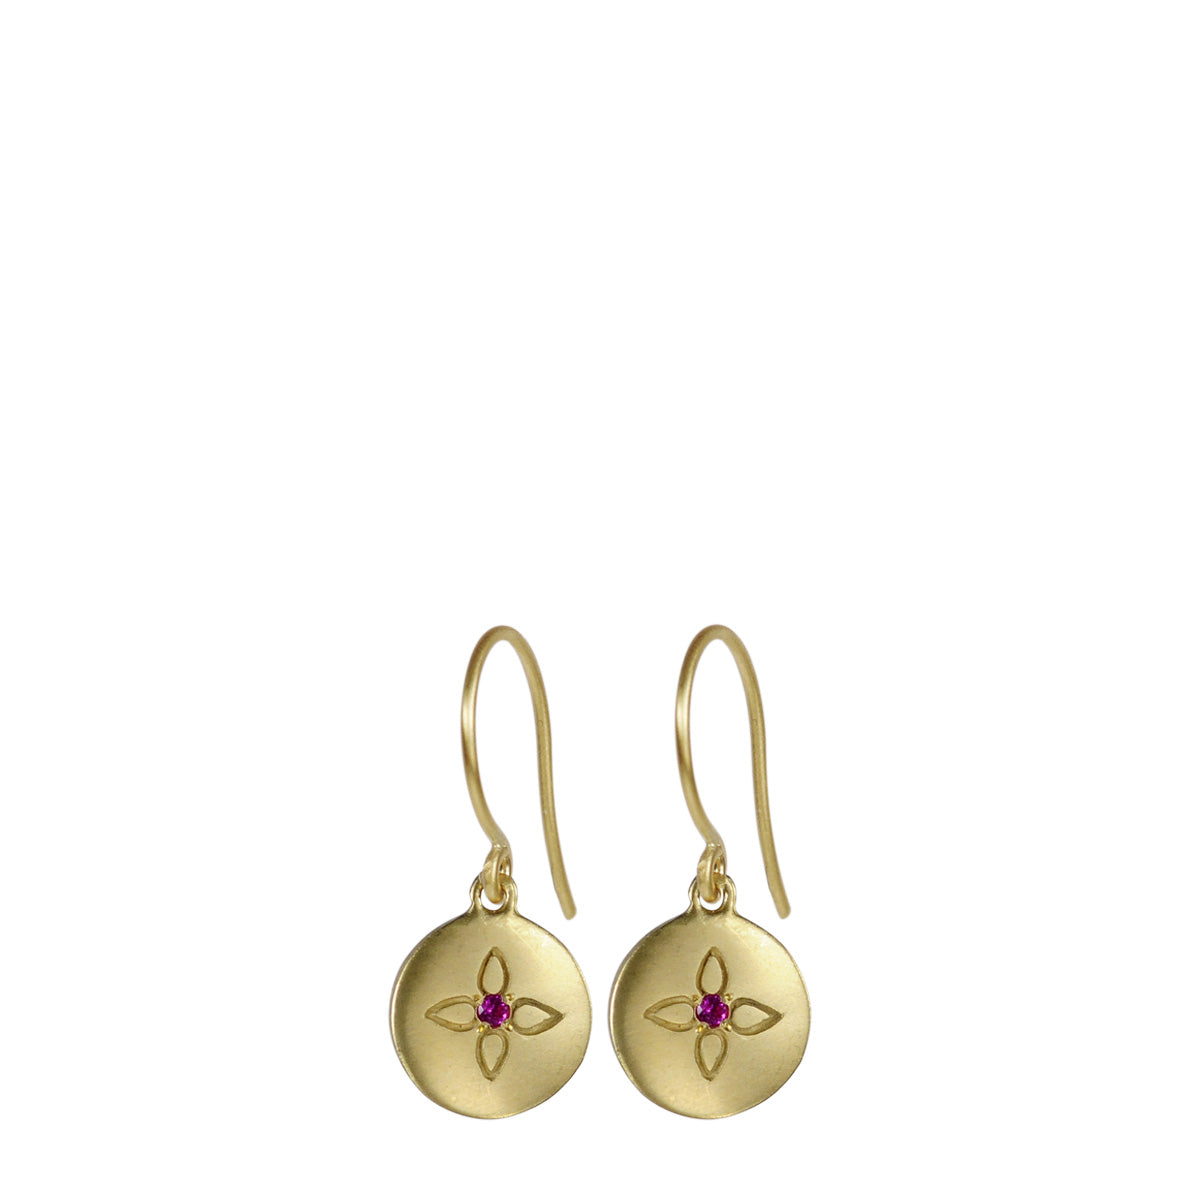 18K Gold Lotus Drop Earrings with Rubies